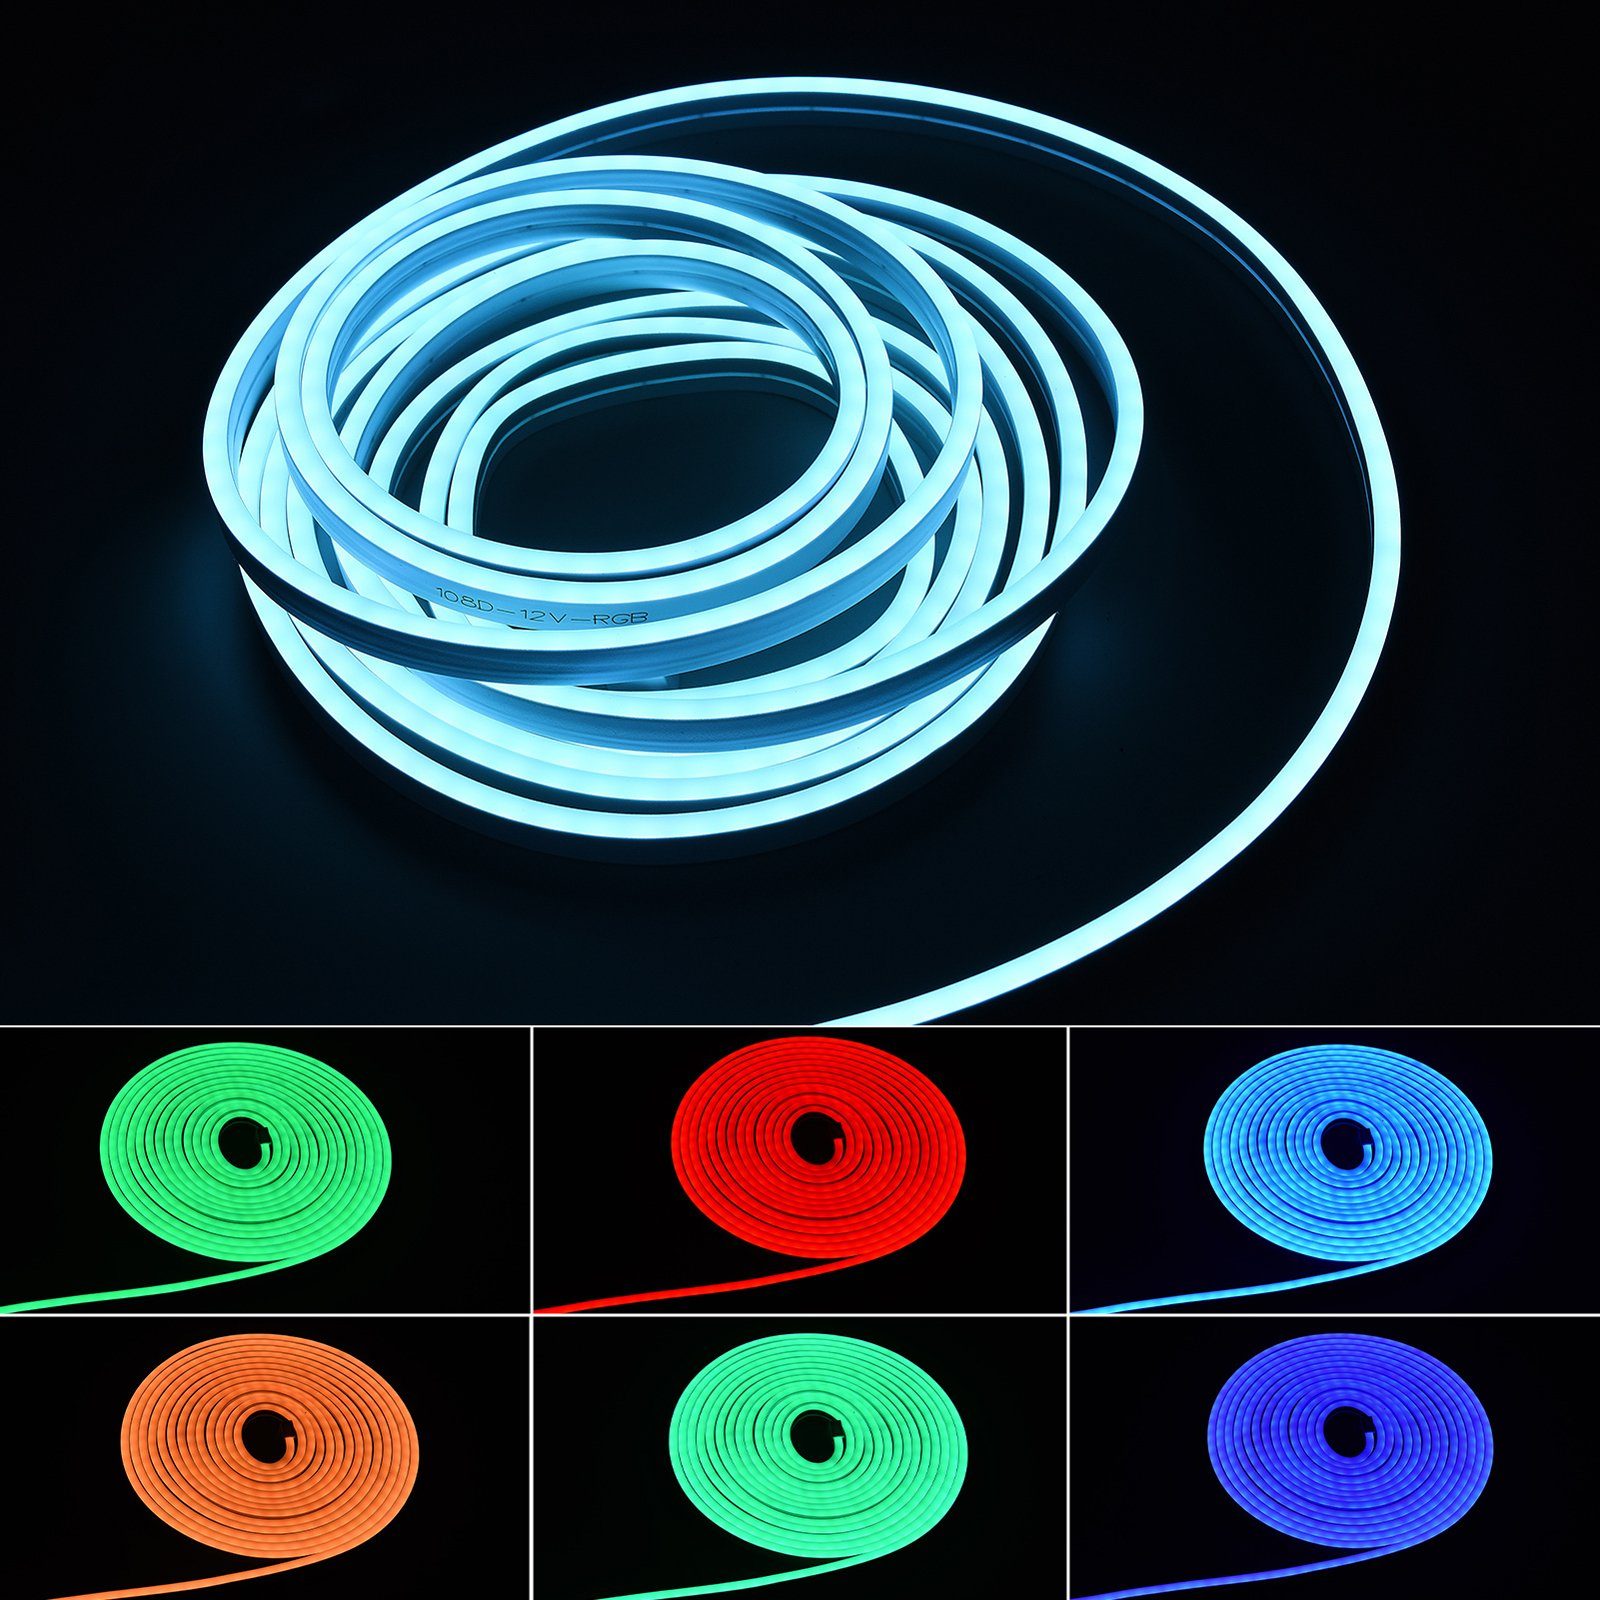 SEEZSSA LED-Neon-Streifen-Set, RGB-Neon-Lichtleiste LED (5M) Stripe mit APP-Steuerung Bluetooth